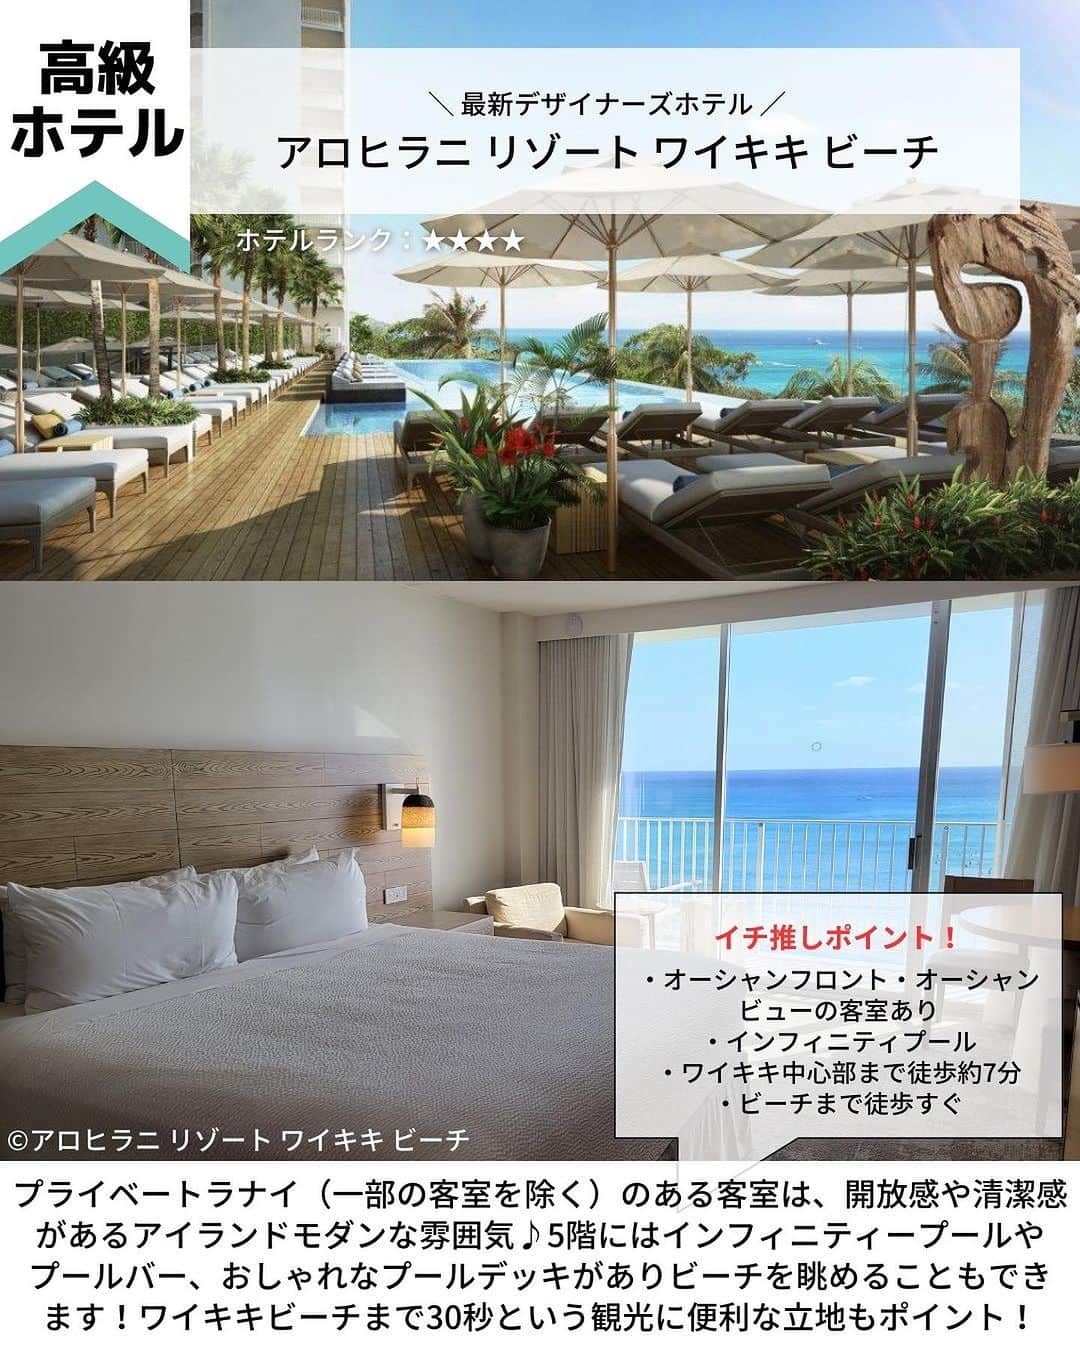 旅工房公式さんのインスタグラム写真 - (旅工房公式Instagram)「＼旅行会社社員のおすすめ！ハワイの人気ホテル紹介！／  #ハワイ #ハワイホテル  ハワイツアー👉https://www.tabikobo.com/area/hawaii/hawaii/   こんにちは！☺  今回は、旅行で大人気のハワイの人気ホテルを紹介します！👀💛  また、旅Pocketではハワイおすすめホテルランキングも特集しています！ぜひハイライトから旅Pocketの記事もチェックしてみてください✨   ぜひハワイ旅行の参考にしてみてくださいね＼(^o^)／ 💚   ━━━━━━━━━━━━━━━ ▽  📍ハレクラニ （@halekulanihotel、@halekulani.japan）  「天国にふさわしい館」の由来通りのラグジュアリーホテル！  創業から1世紀を越えた今も変わらない心からのおもてなしが味わえます。  水色と白を基調とした客室はゆったりとした広さ♪  海外では珍しく深いバスタブがあって寛げるのも嬉しいポイントの1つです。   📍ロイヤル ハワイアン ラグジュアリー コレクション リゾート （@royal_hawaiian、@royalhawaiianjp）  太平洋のピンクパレスと愛されるワイキキビーチの代表的なホテル♪  ワイキキの中心にありながらも、椰子の木が揺れる清々しい自然豊かな中庭も魅力です！  ホテル内にあるビーチフロントのレストランではピンクの見た目がかわいいピンクパレス・パンケーキが食べられます◎   📍トランプ インターナショナル ホテル ワイキキ（@trumpwaikiki、@trump_hotel_waikiki）  海を一望できるインフィニティプール、高級レストラン、ザ・スパアットトランプなど、最高のおもてなしを味わえるホテルです。  コンドミニアムタイプなので室内には高級家電を完備したフルキッチンまたは簡易キッチンがあり、ファミリーや大人のグループ旅行にもおすすめです！   📍アロヒラニ リゾート ワイキキ ビーチ（@alohilaniresort、@alohilaniresort.jp）  プライベートラナイ（一部の客室を除く）のある客室は、清潔感がありアイランドモダンな雰囲気♪  5階にはインフィニティープールやプールバー、おしゃれなプールデッキがありビーチを眺めることもできます！  ワイキキビーチまで30秒という観光に便利な立地もポイント！   📍シェラトン・ワイキキ（@sheratonwaikiki、@sheratonwaikikijp）  食事やショッピング、トロリーに乗るにも便利な場所で、ワイキキビーチが目の前！  子どもから大人まで楽しめるウォータースライダーやジャグジーのある、「Helumoa Playground」はファミリーに大人気♪  16歳以上のホテルゲストはインフィニティプールも利用できますよ！   📍アストン アット ザ ワイキキ バニアン  大型施設で、長期滞在者、リピーターに人気のコンドミニアム！  全室ワンベッドルームスイートで部屋は広く、自宅でゆったりとくつろいでいるような気分♪  レクリエーションスペースでは、バーベキューグリルが利用が可能なので、家族や友人とワイワイ過ごすのもおすすめ◎   📍ハイアット プレイス ワイキキビーチ（@hyattplacewaikiki）  ワイキキの東側、クヒオビーチやホノルル動物園まで徒歩5分！  広々とした客室が特徴で、ホテル全館に無料Wi-Fiを完備されています。  また、ゲストキッチンでは毎日できたてのコンチネンタル朝食を  無料で食べることができるのも嬉しいポイント♪   ※営業時間・内容は変更になる場合がございます。詳しくは各ホームページをご確認ください。   海外・国内問わず、素敵なスポットやグルメ、アイテムの写真にはぜひ #旅工房 や @tabikobo をタグ付けして下さい💕   ━━━━━━━━━━━━━━━   ✨   #旅工房  #旅工房 #ハワイ女子旅 #ハワイ観光 #ハワイ旅行 #ハワイお土産 #ハレクラニ #ロイヤルハワイアン #ピンクパンケーキ #トランプインターナショナルホテル #アロヒラニリゾート #アストンワイキキ #ハイアットプレイス #シェラトンワイキキ #旅行好きな人と繋がりたい #海外旅行準備 #旅好き女子 #妄想旅行 #海外旅行行きたい #海外旅行計画 #旅スタグラム #海外一人旅 #旅の記録」10月20日 18時50分 - tabikobo